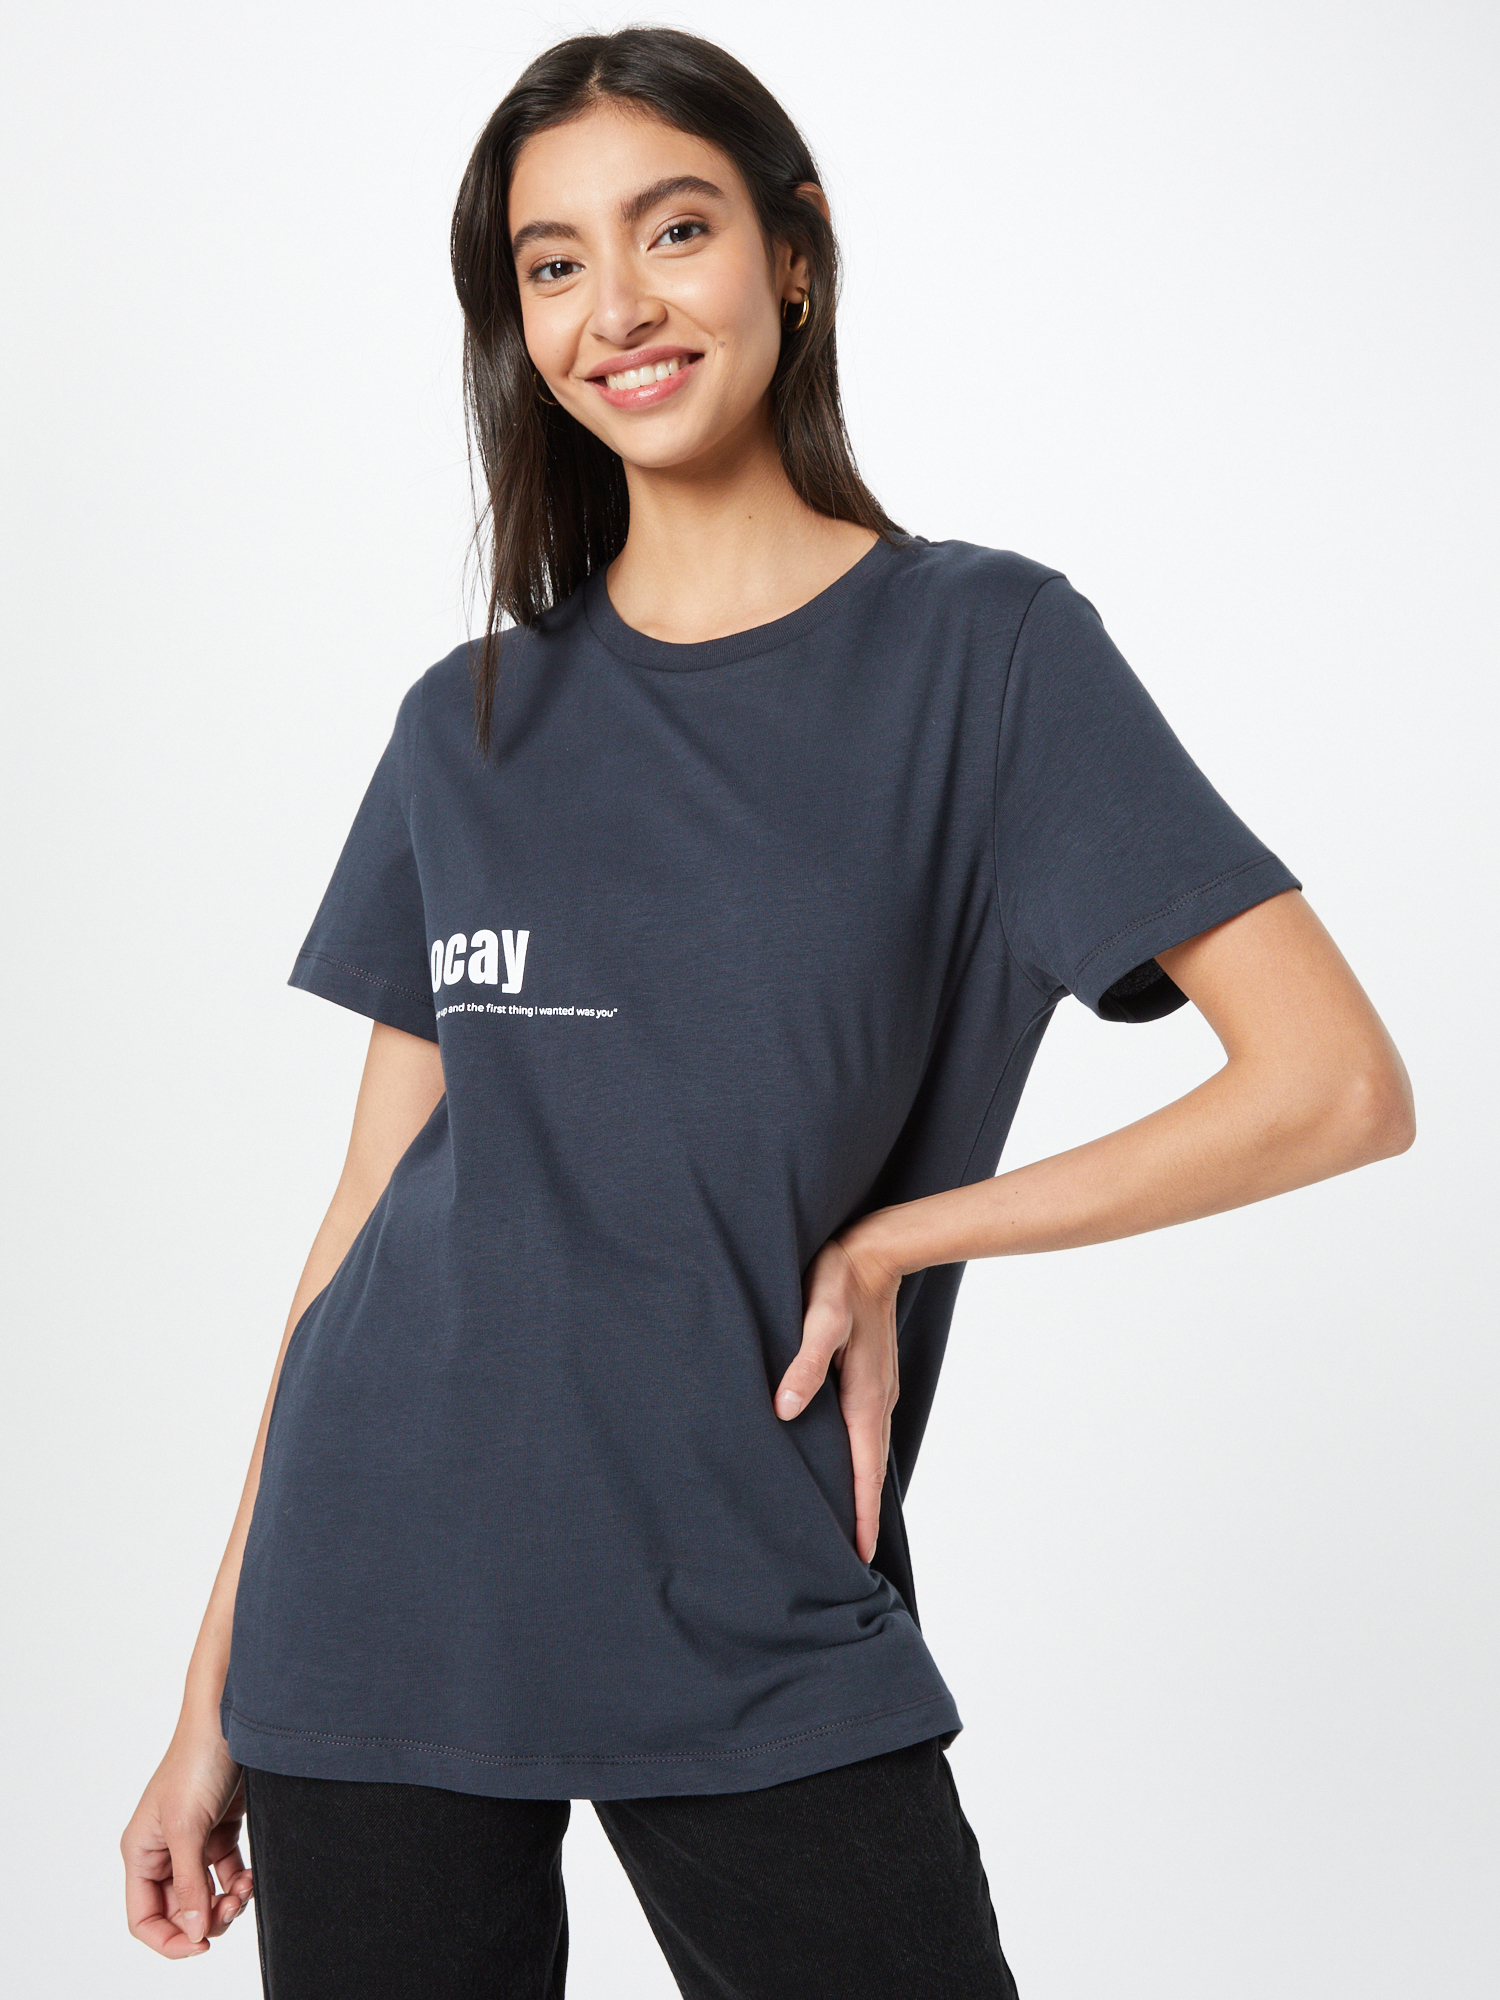 Yy04F Odzież Ocay Shirt w kolorze Atramentowym 